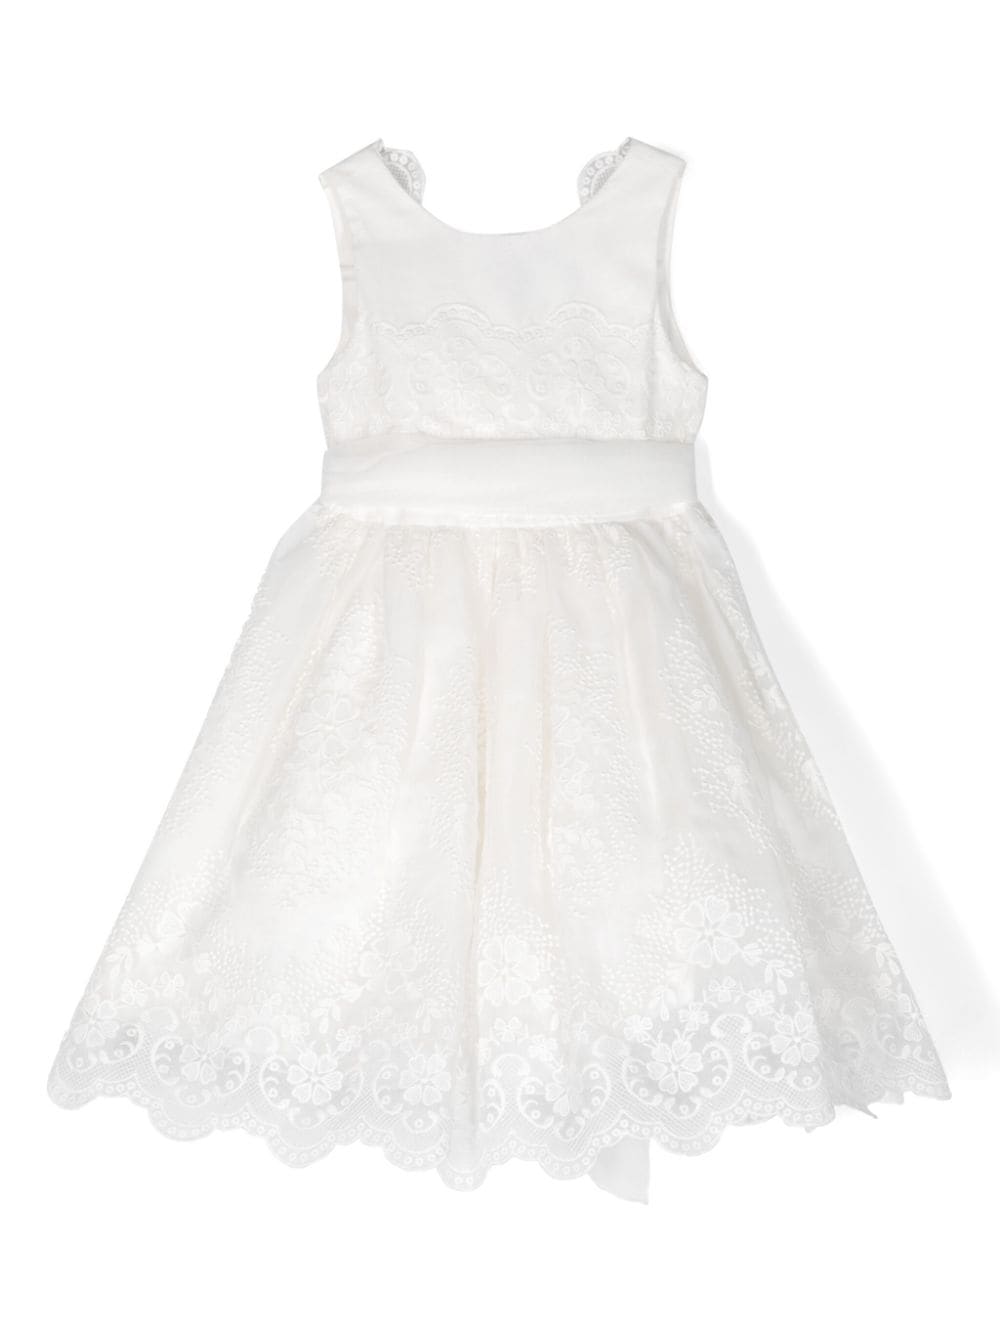 White tulle dress for girls